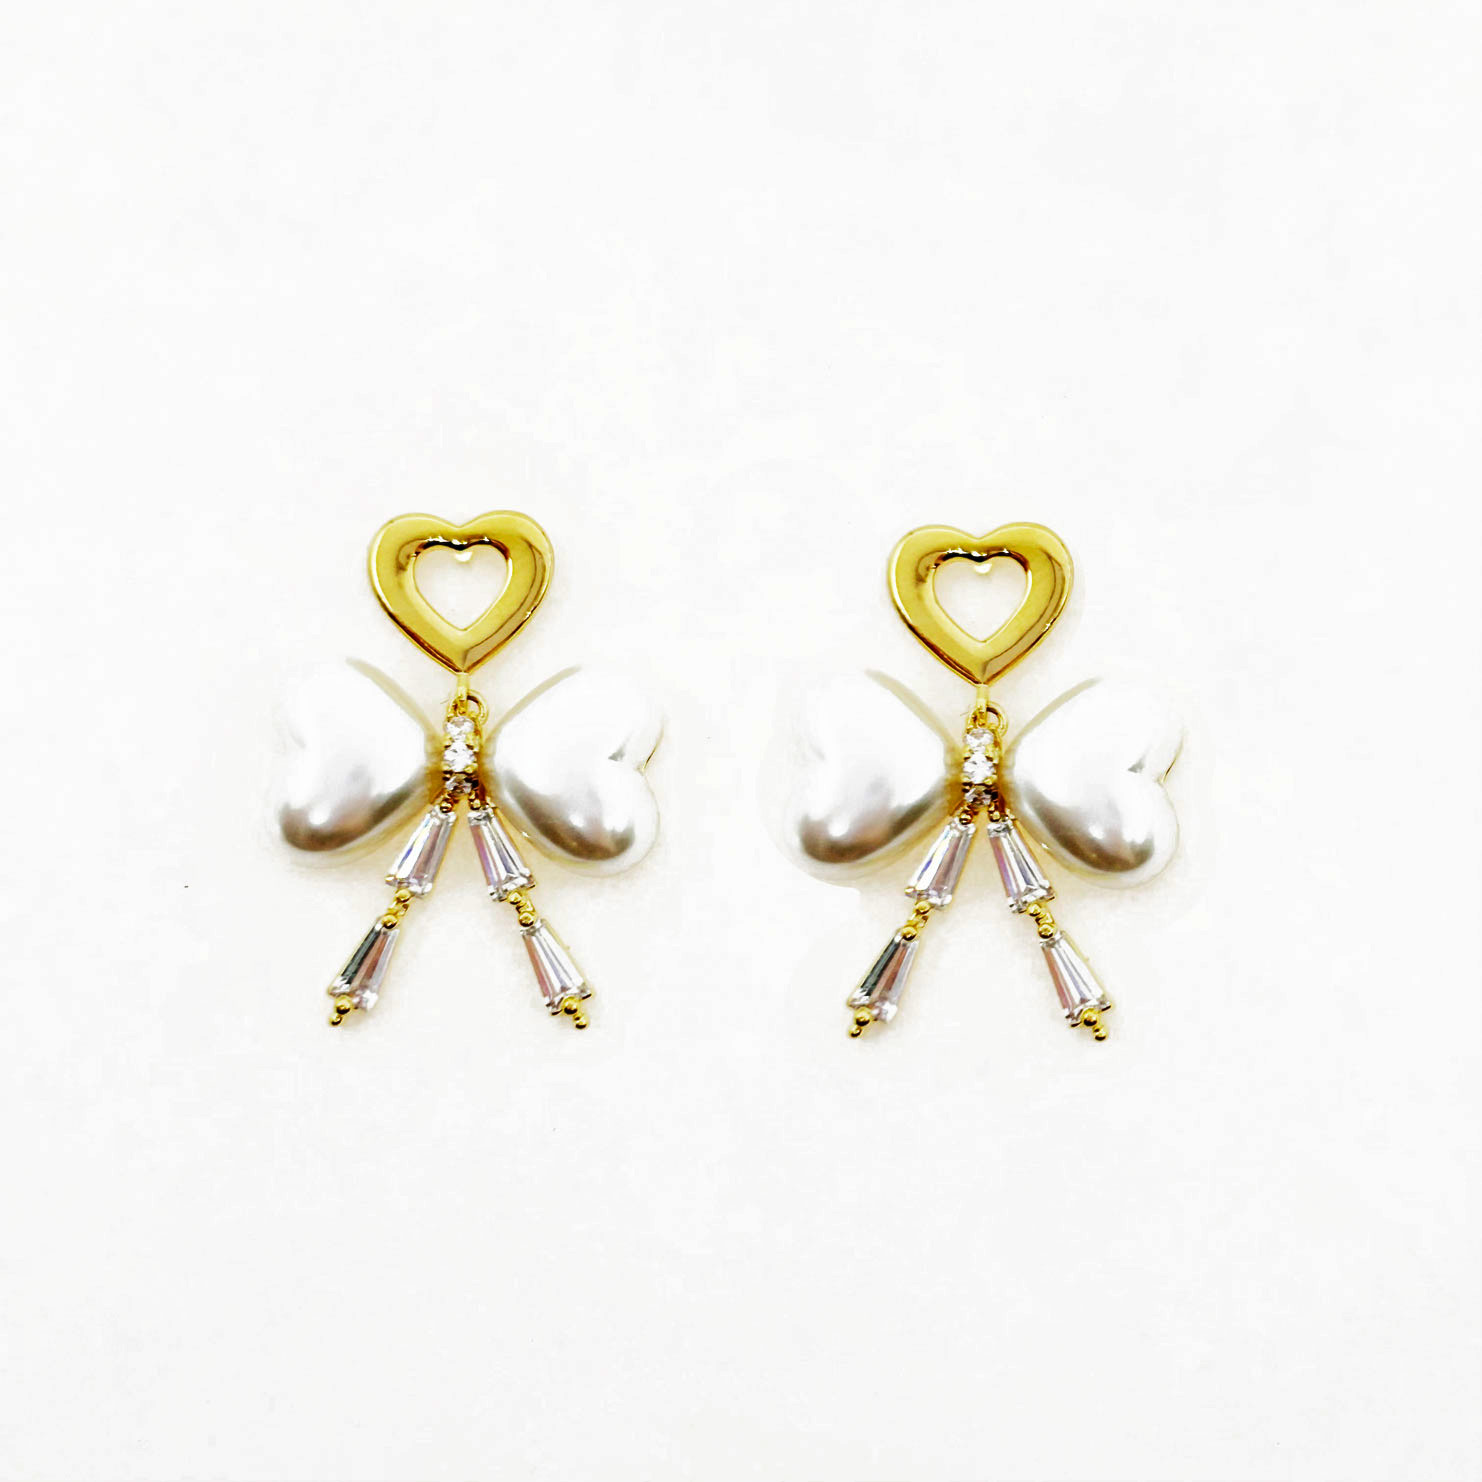 韓國 925純銀 水鑽 愛心 華麗 造型 垂墜感 耳針式耳環